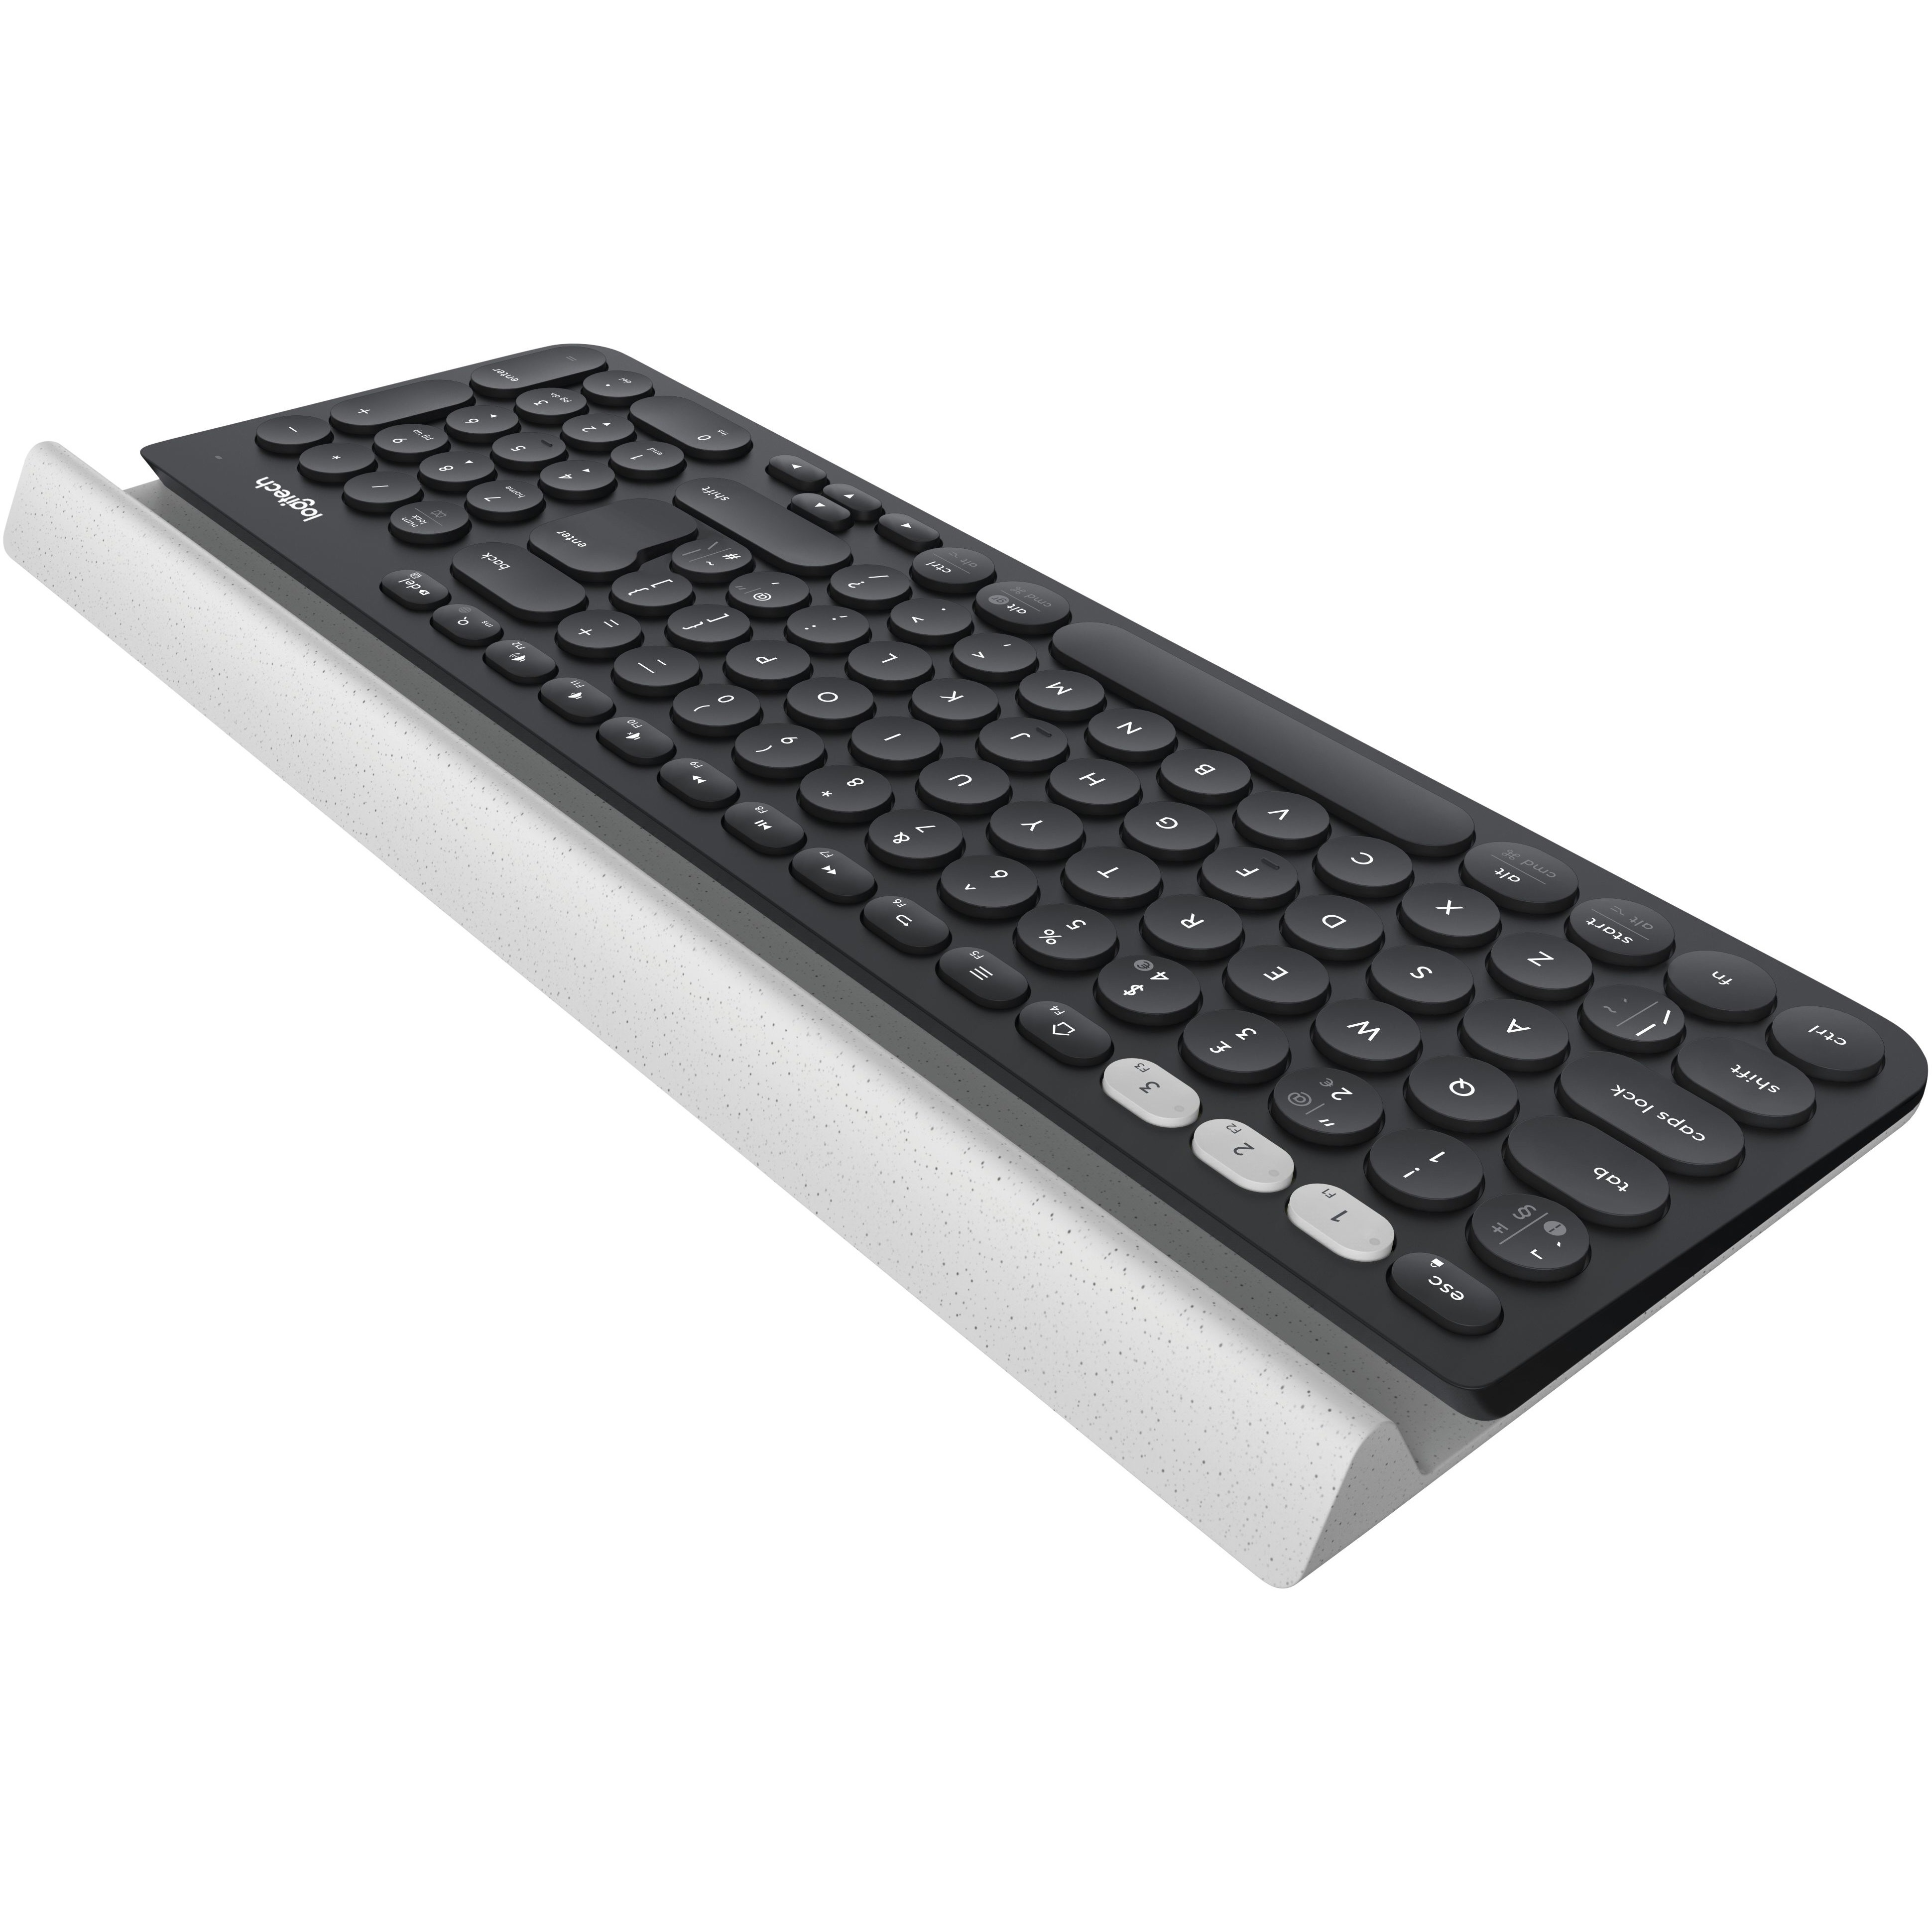 Logitech K780 Wireless Keyboard